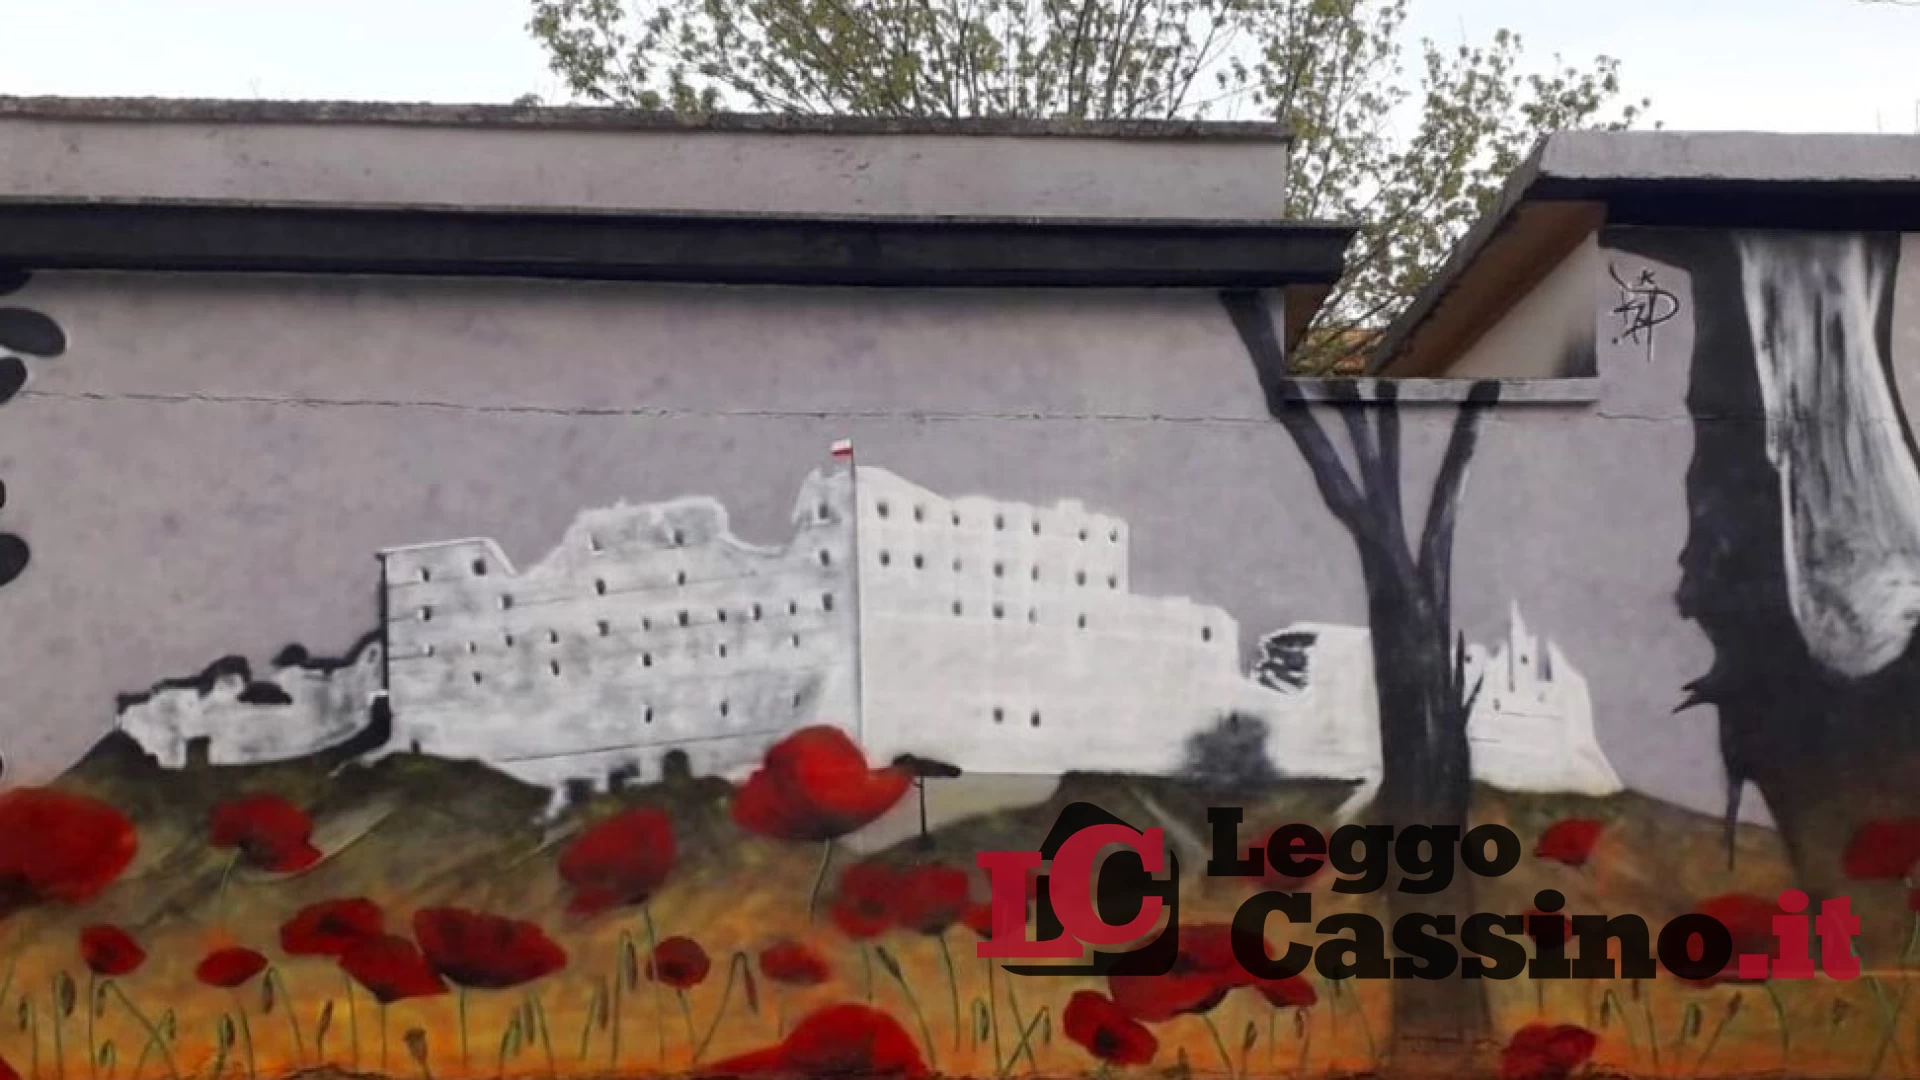 Cassino, la street art "invade" anche l'Historiale